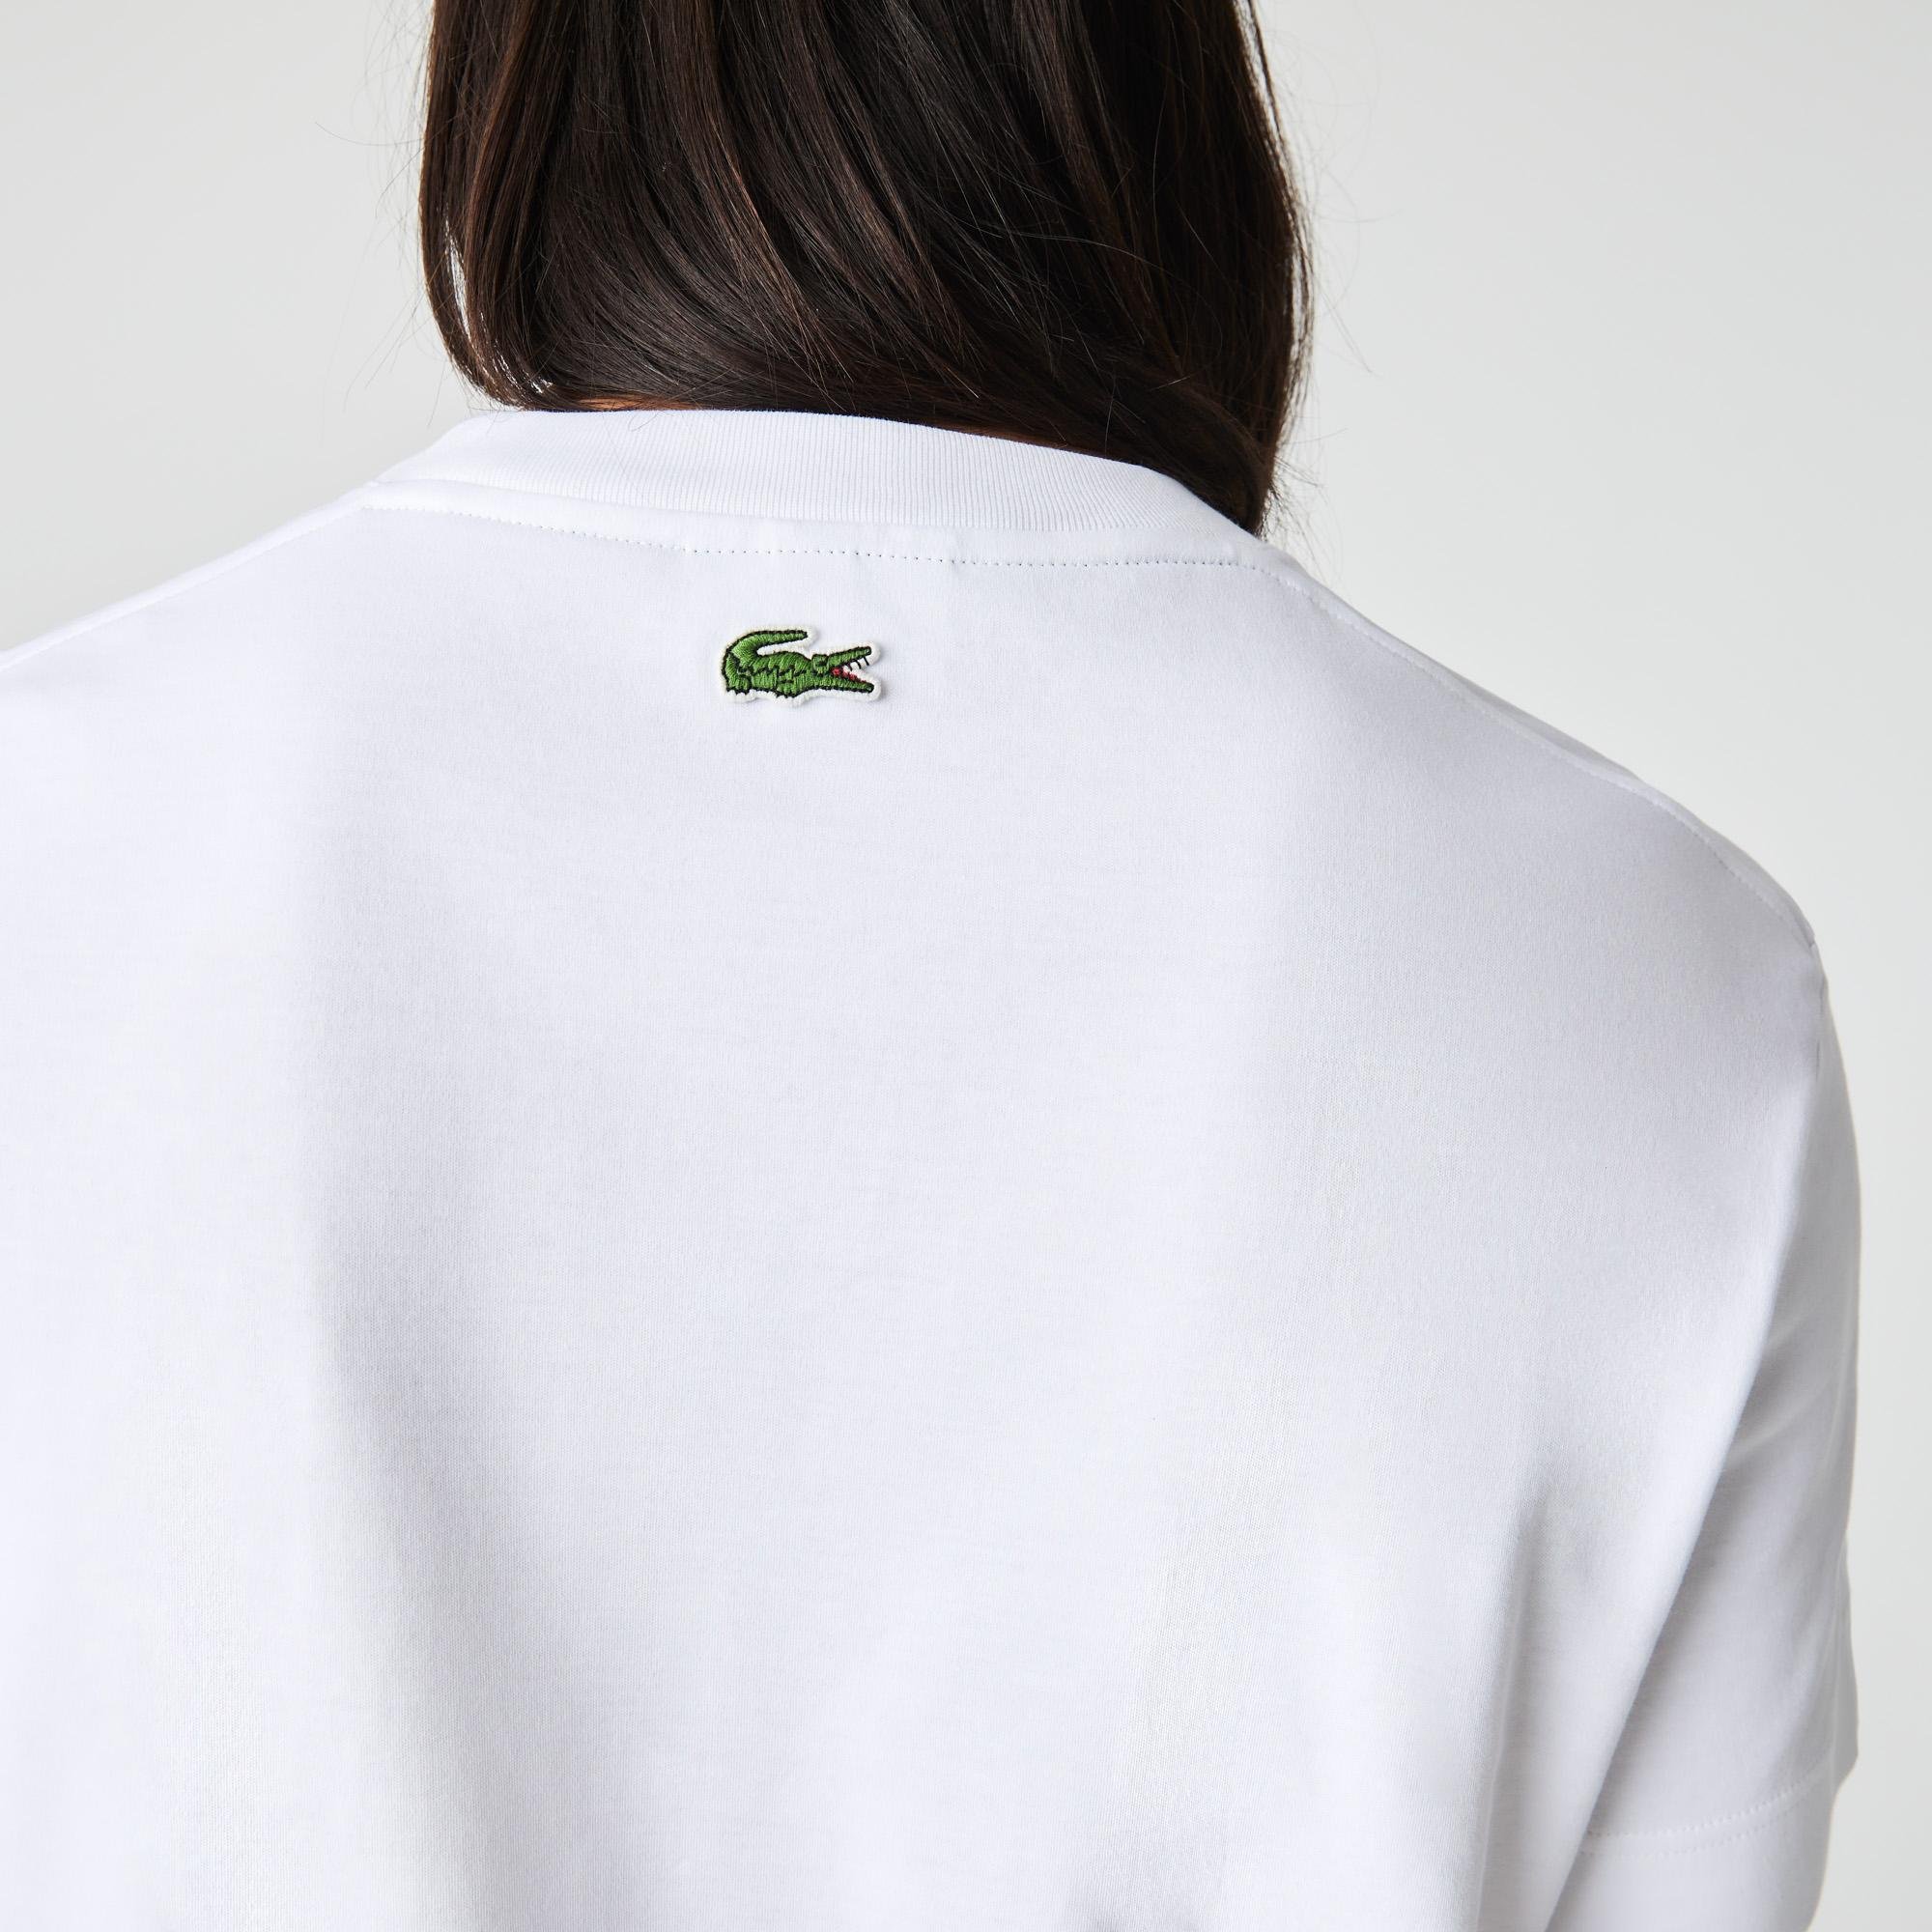 Lacoste férfi relaxed fit azonos árnyalatú márkajelzéssel ellátott pamut póló